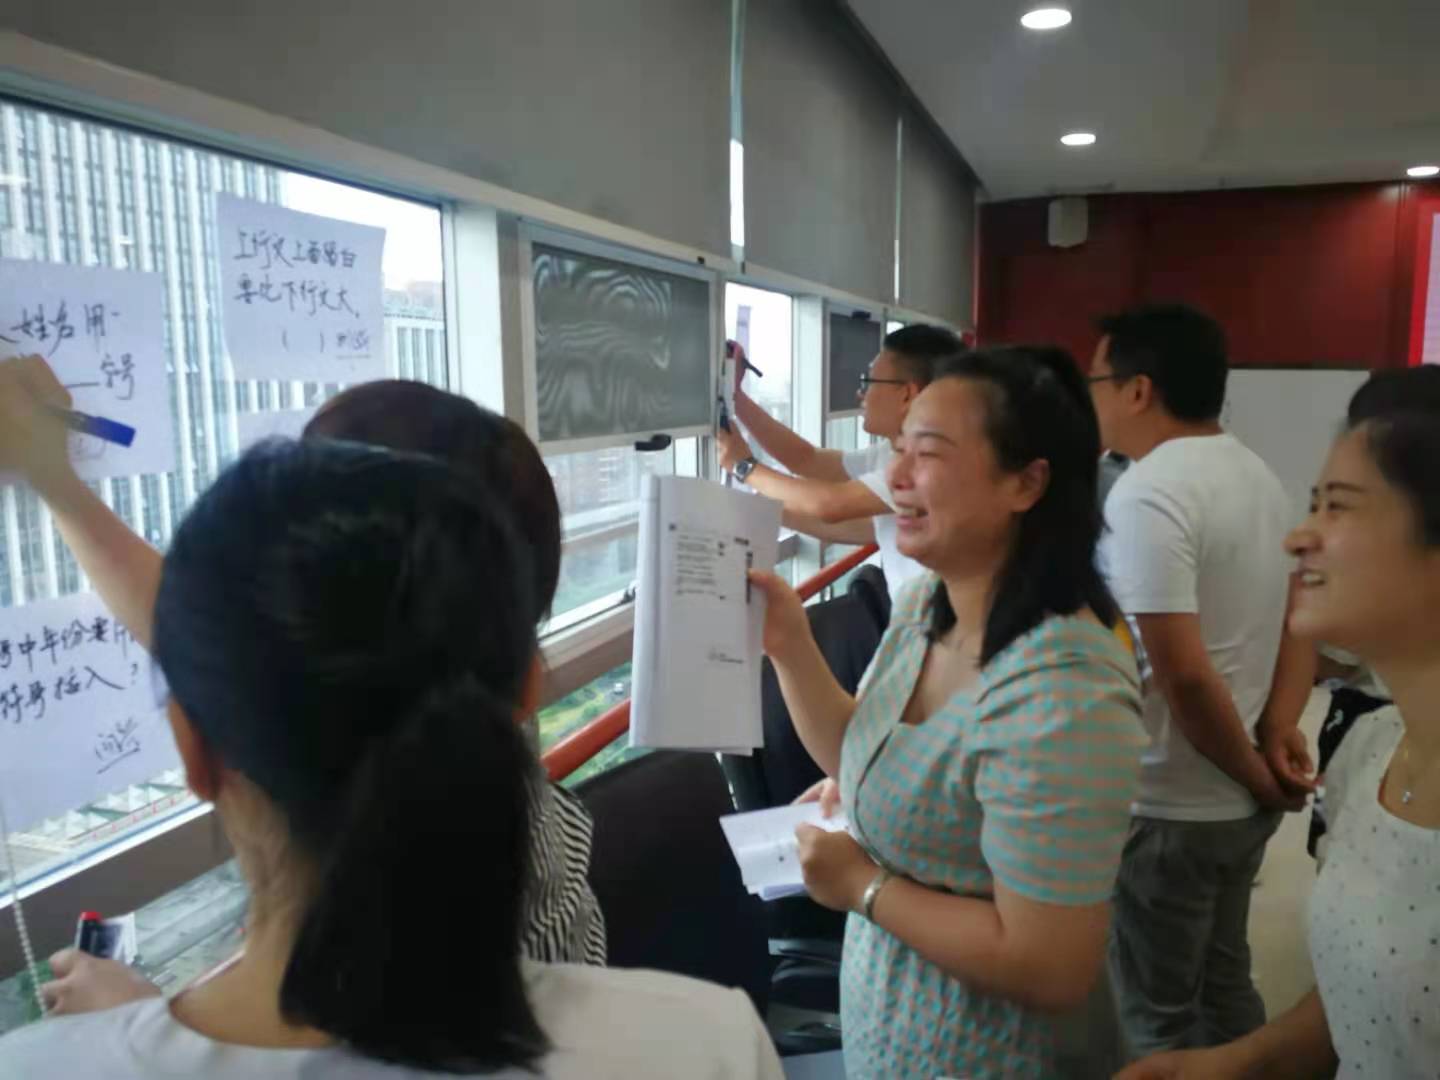 尚翎老师--2020年6月28号给湖南某能源行业带来《公文写作》